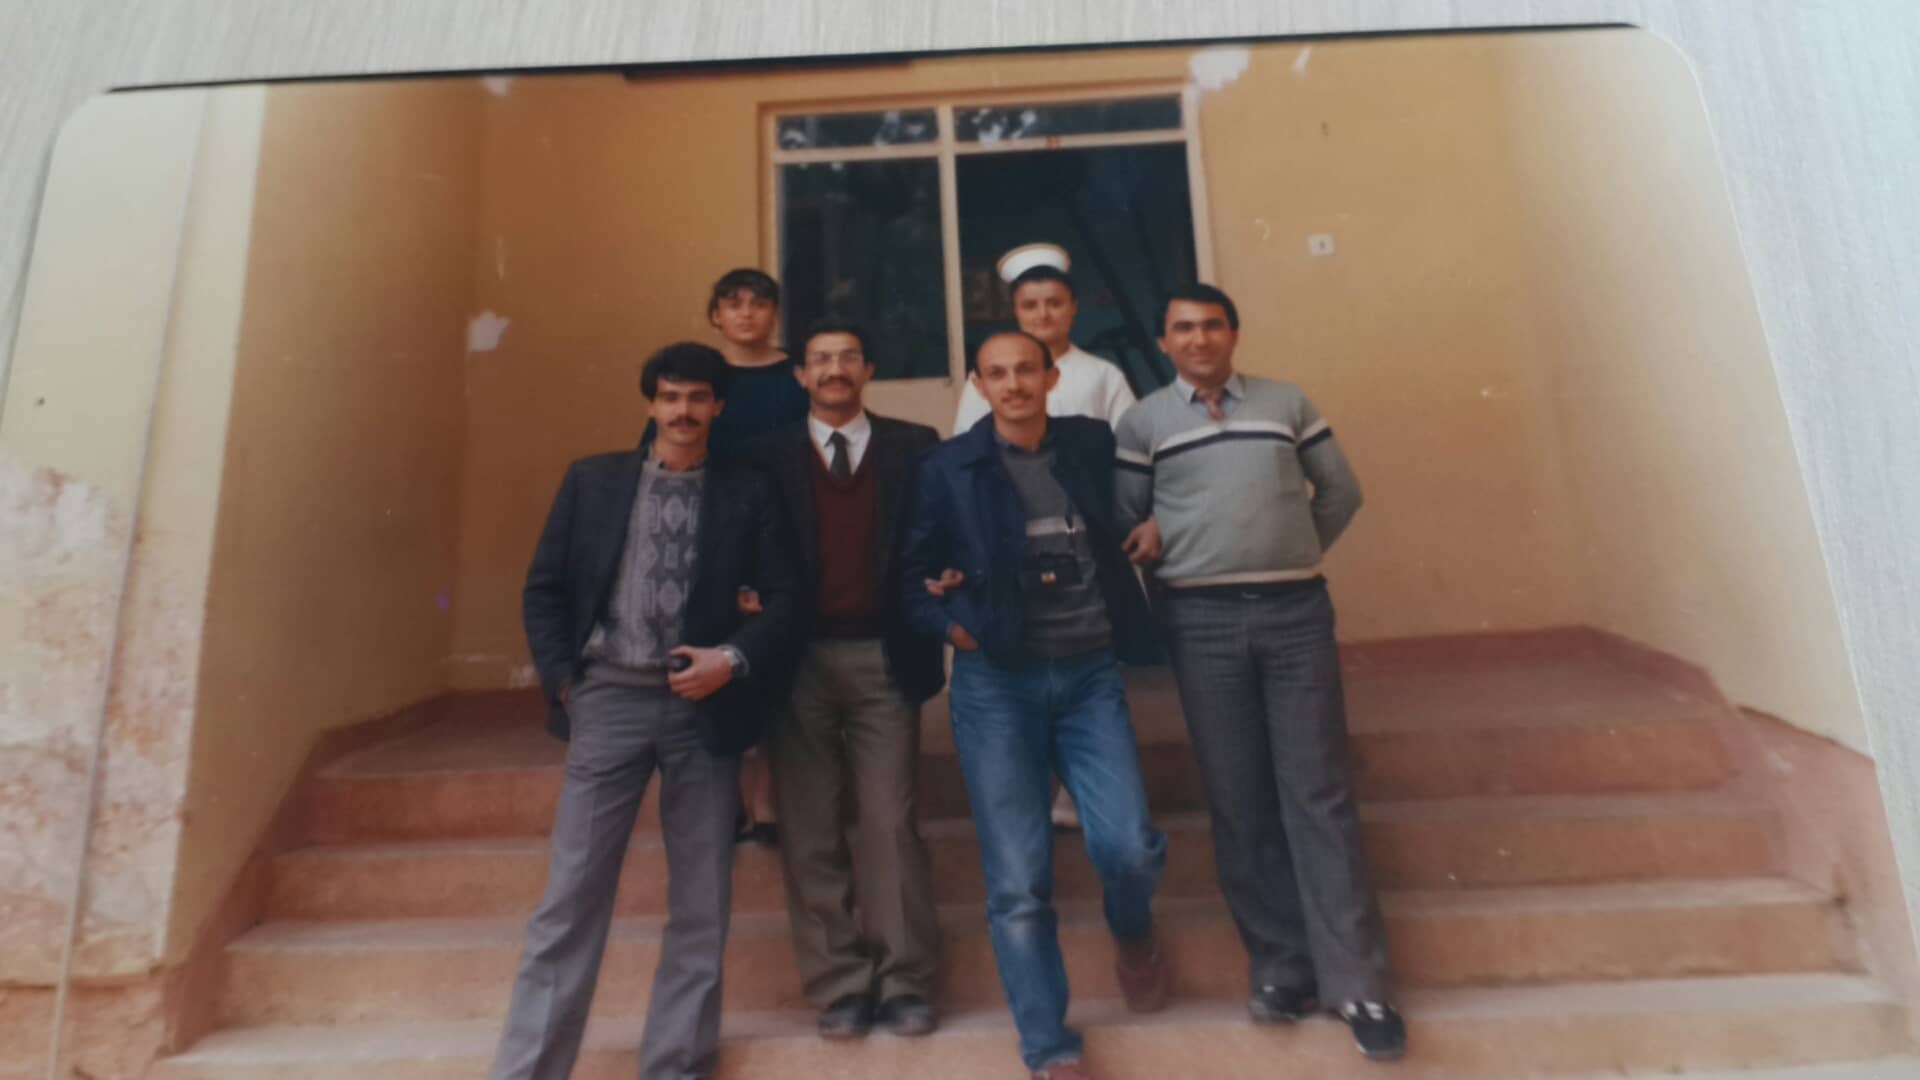 Pülümür Kırmızıköprü Sağlık Ocağı Hemşire Nuray Güllü, Sekreter Nail Tanrıkut ve doktorlar bir arada, 1987